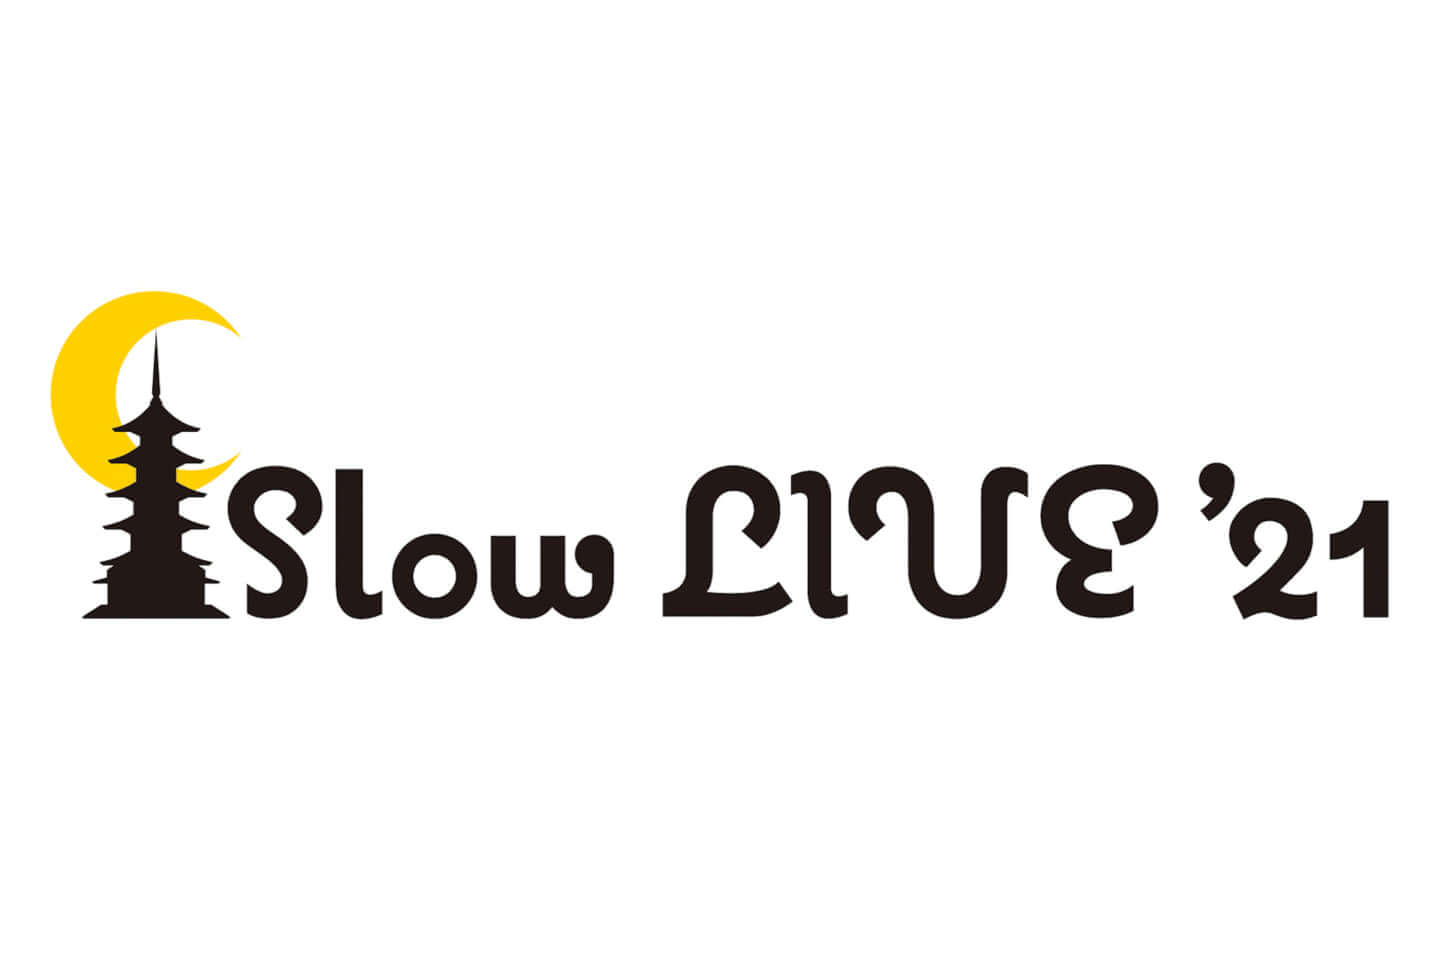 slow-live